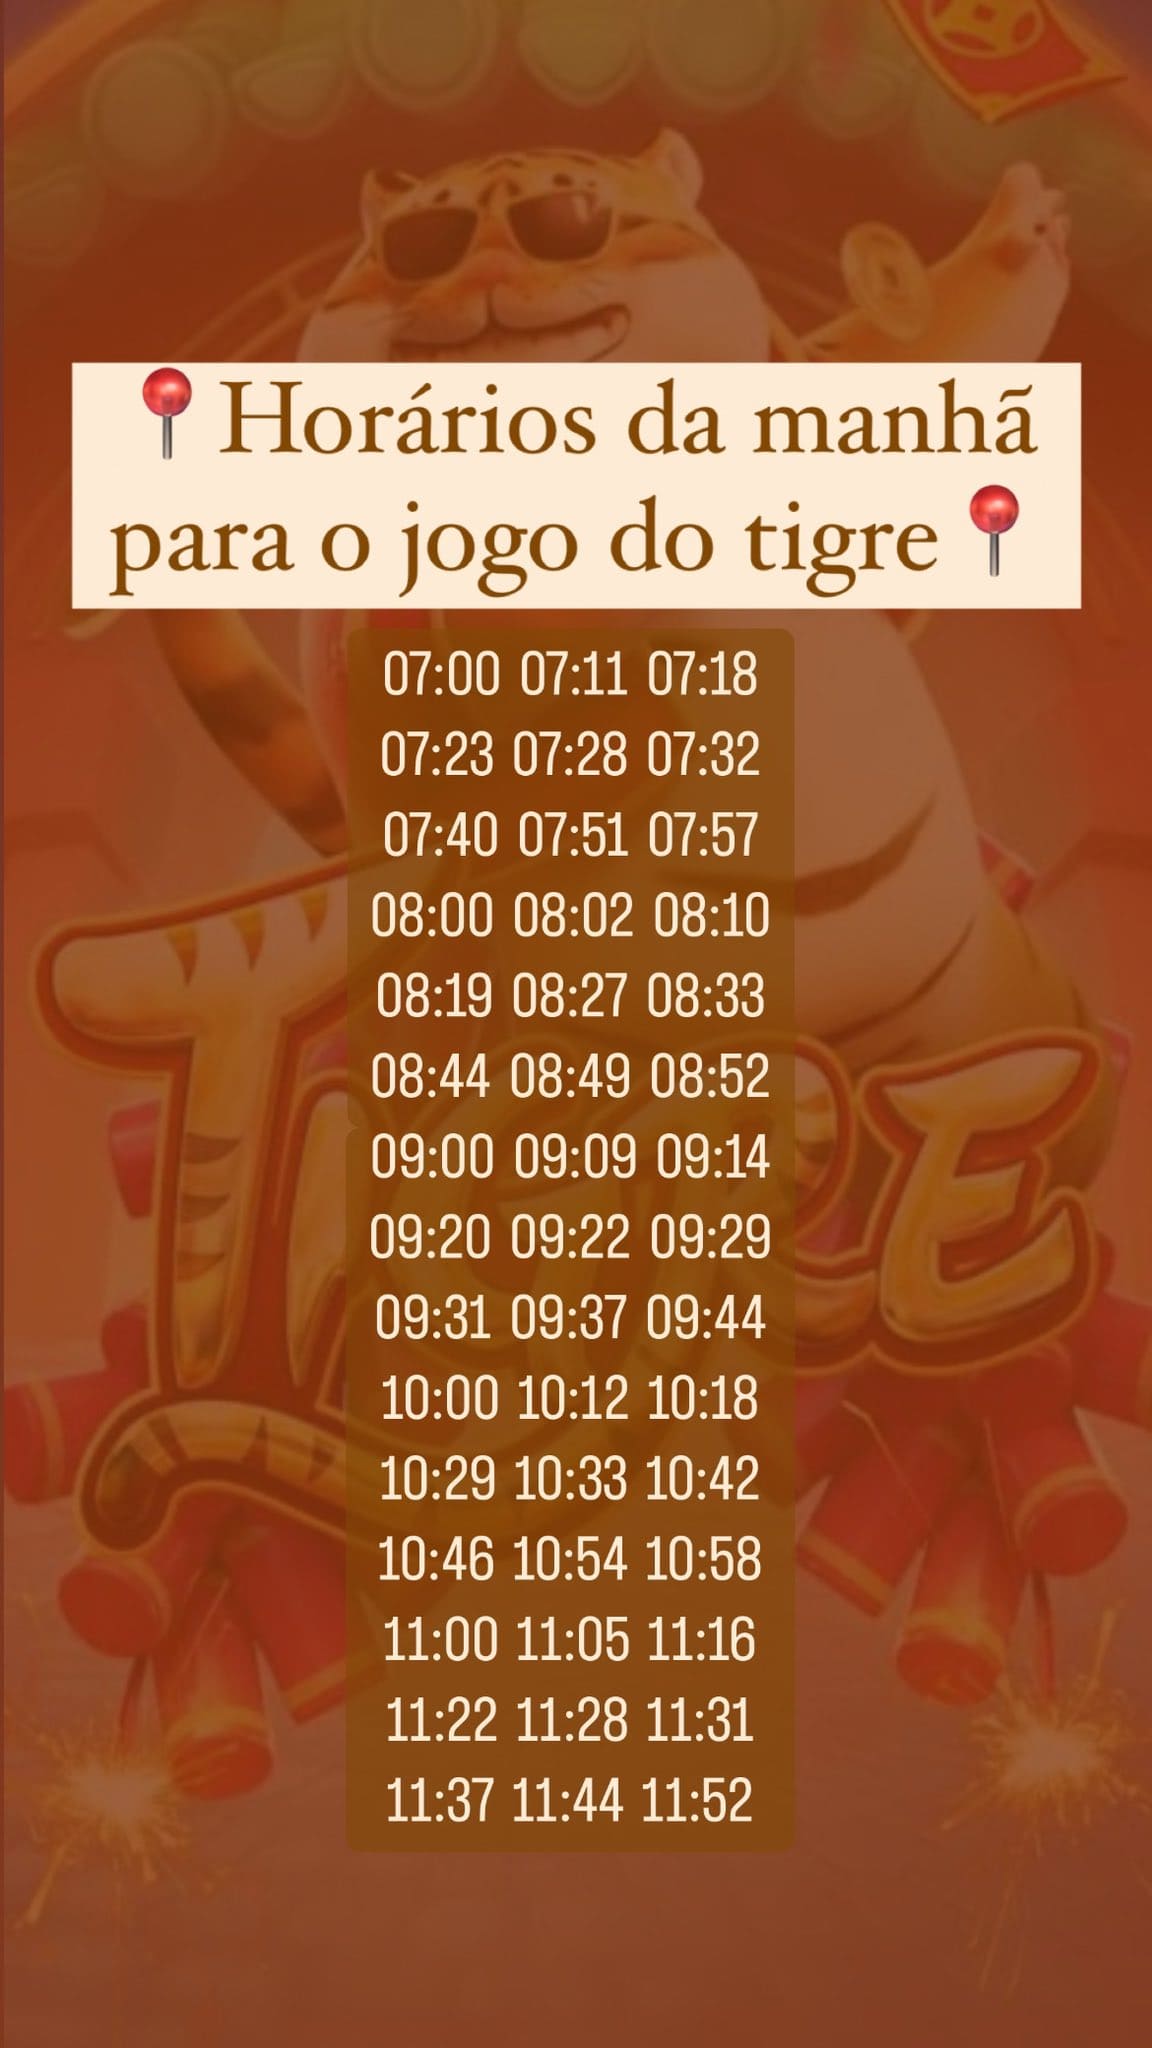 horarios jogo do tigre